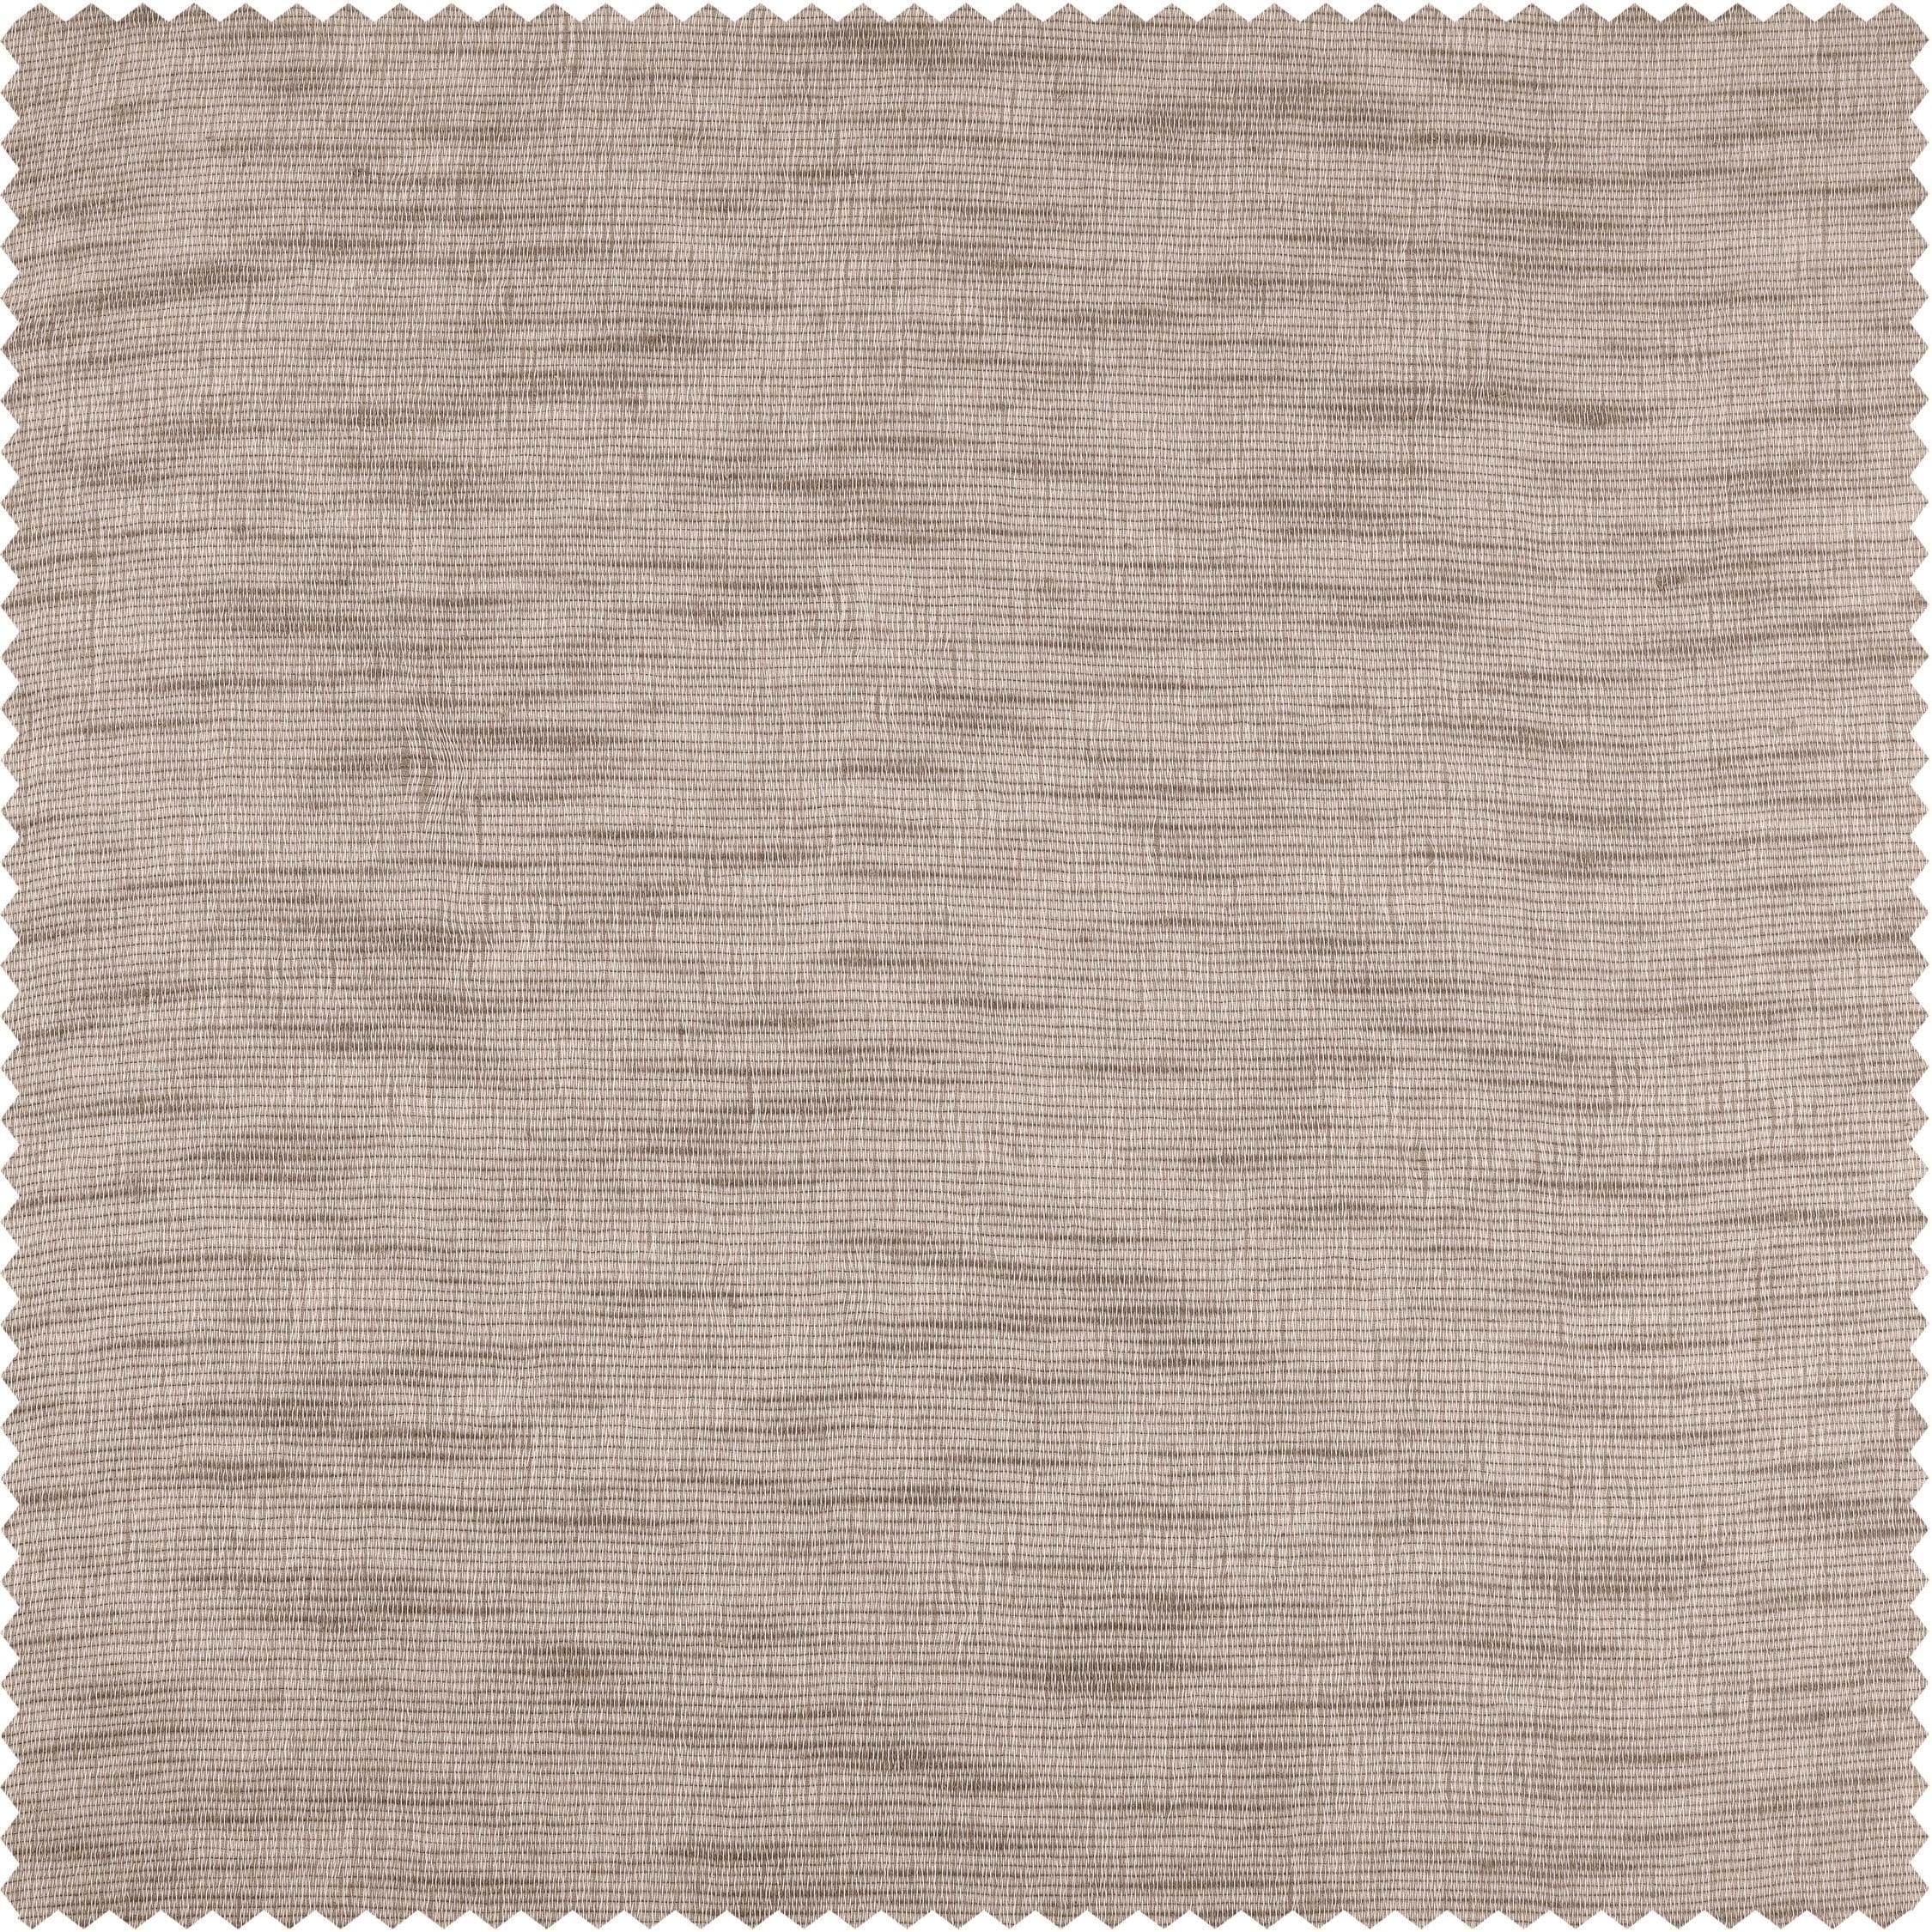 Light Grey Open Weave Linen Blend Sheer Curtain